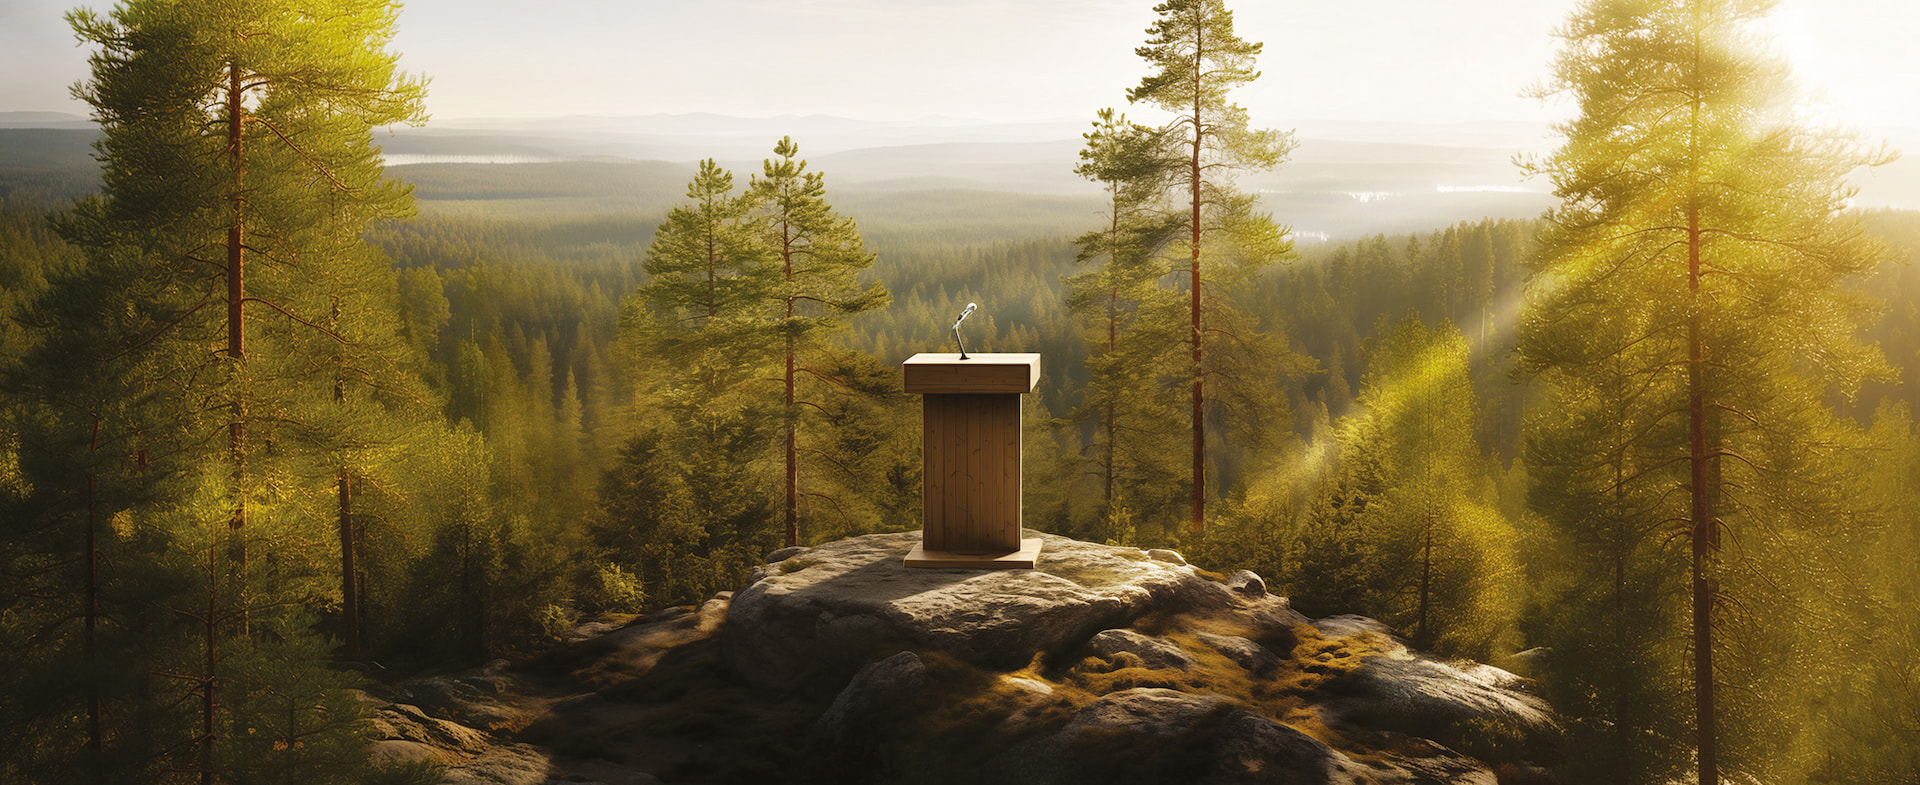 En utsiktsplats över de finländska skogarna